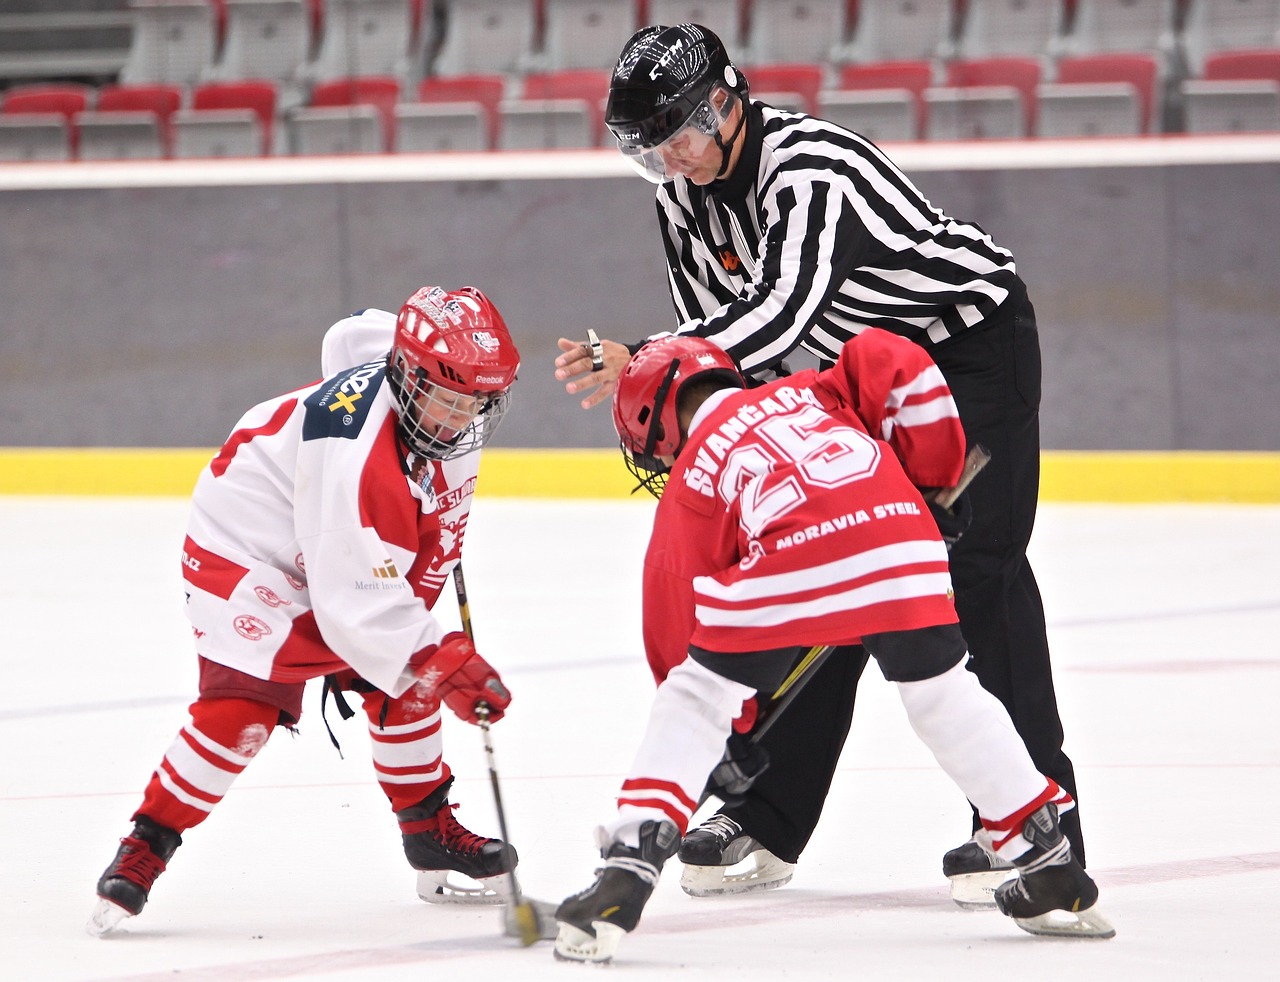 Tréninky pro mladé hokejisty formují budoucí hvězdy ledního hokeje